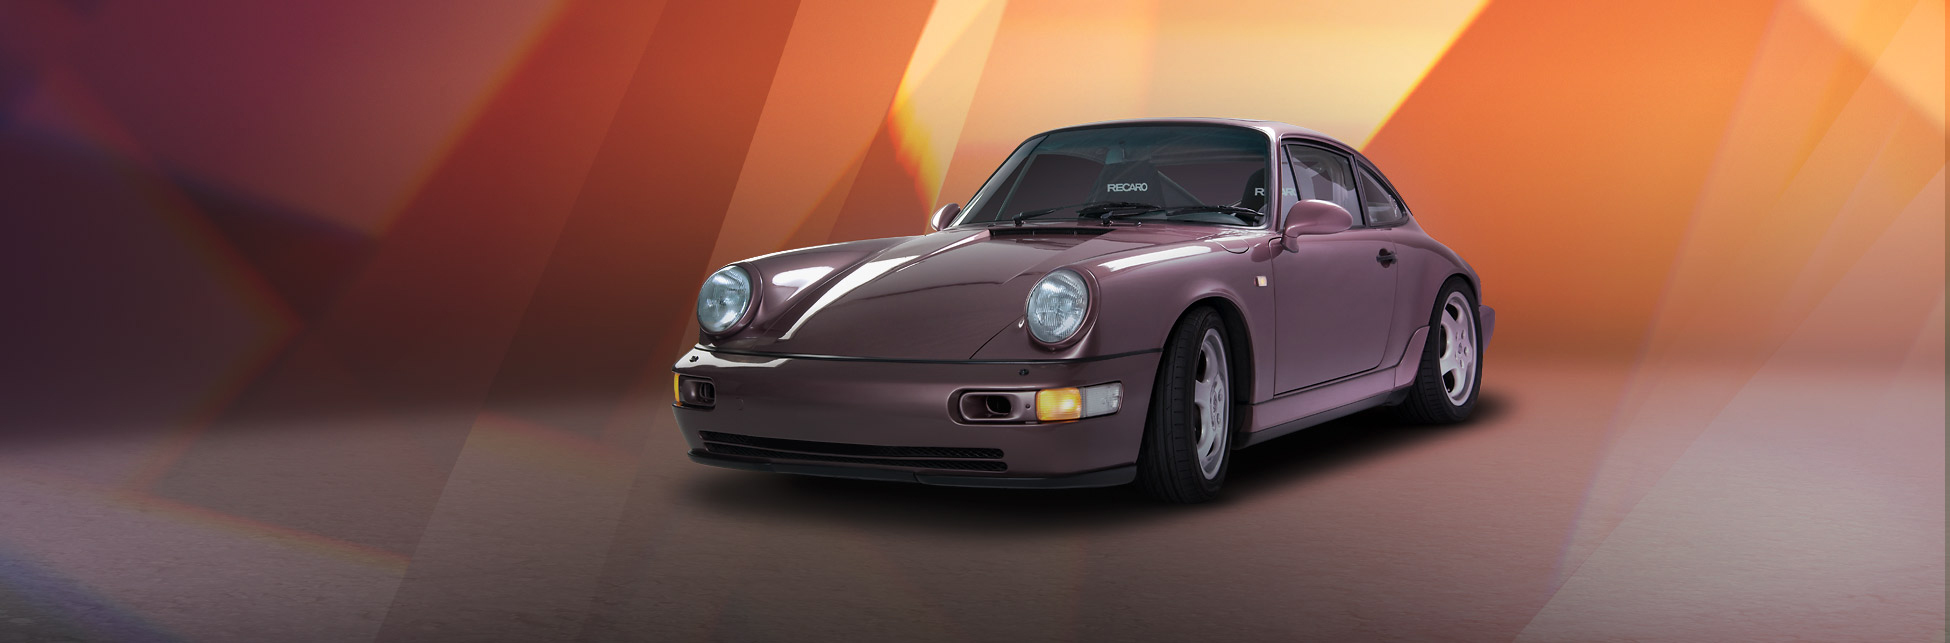 Fahrzeugfotografie im gehobenen Stil, hier ein Porsche vor einem abstrakten Polygonhintergrund.